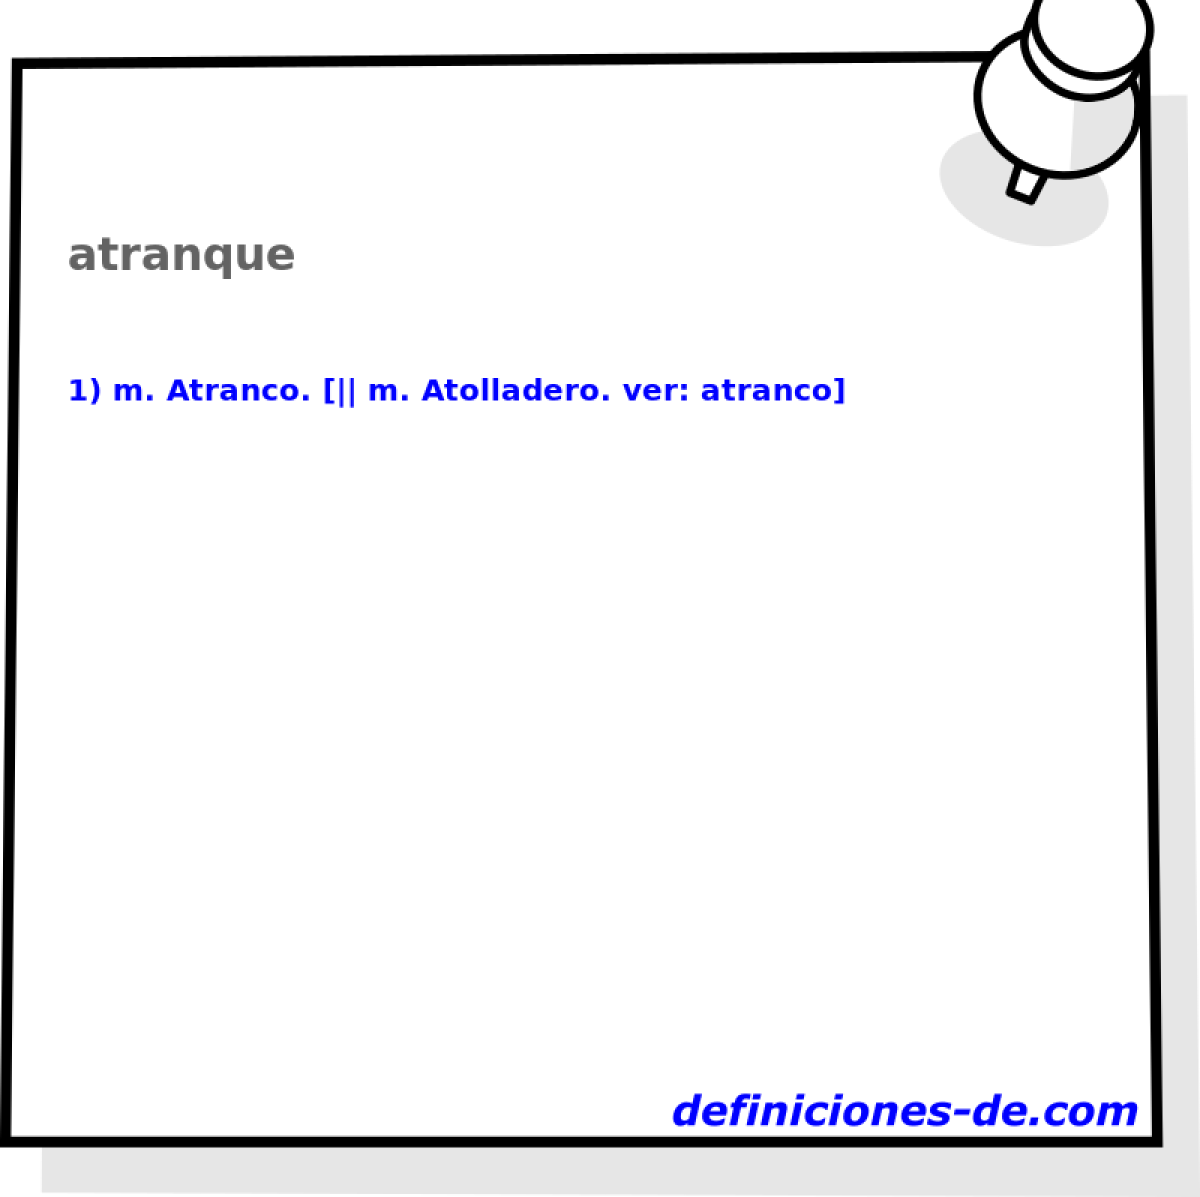 atranque 